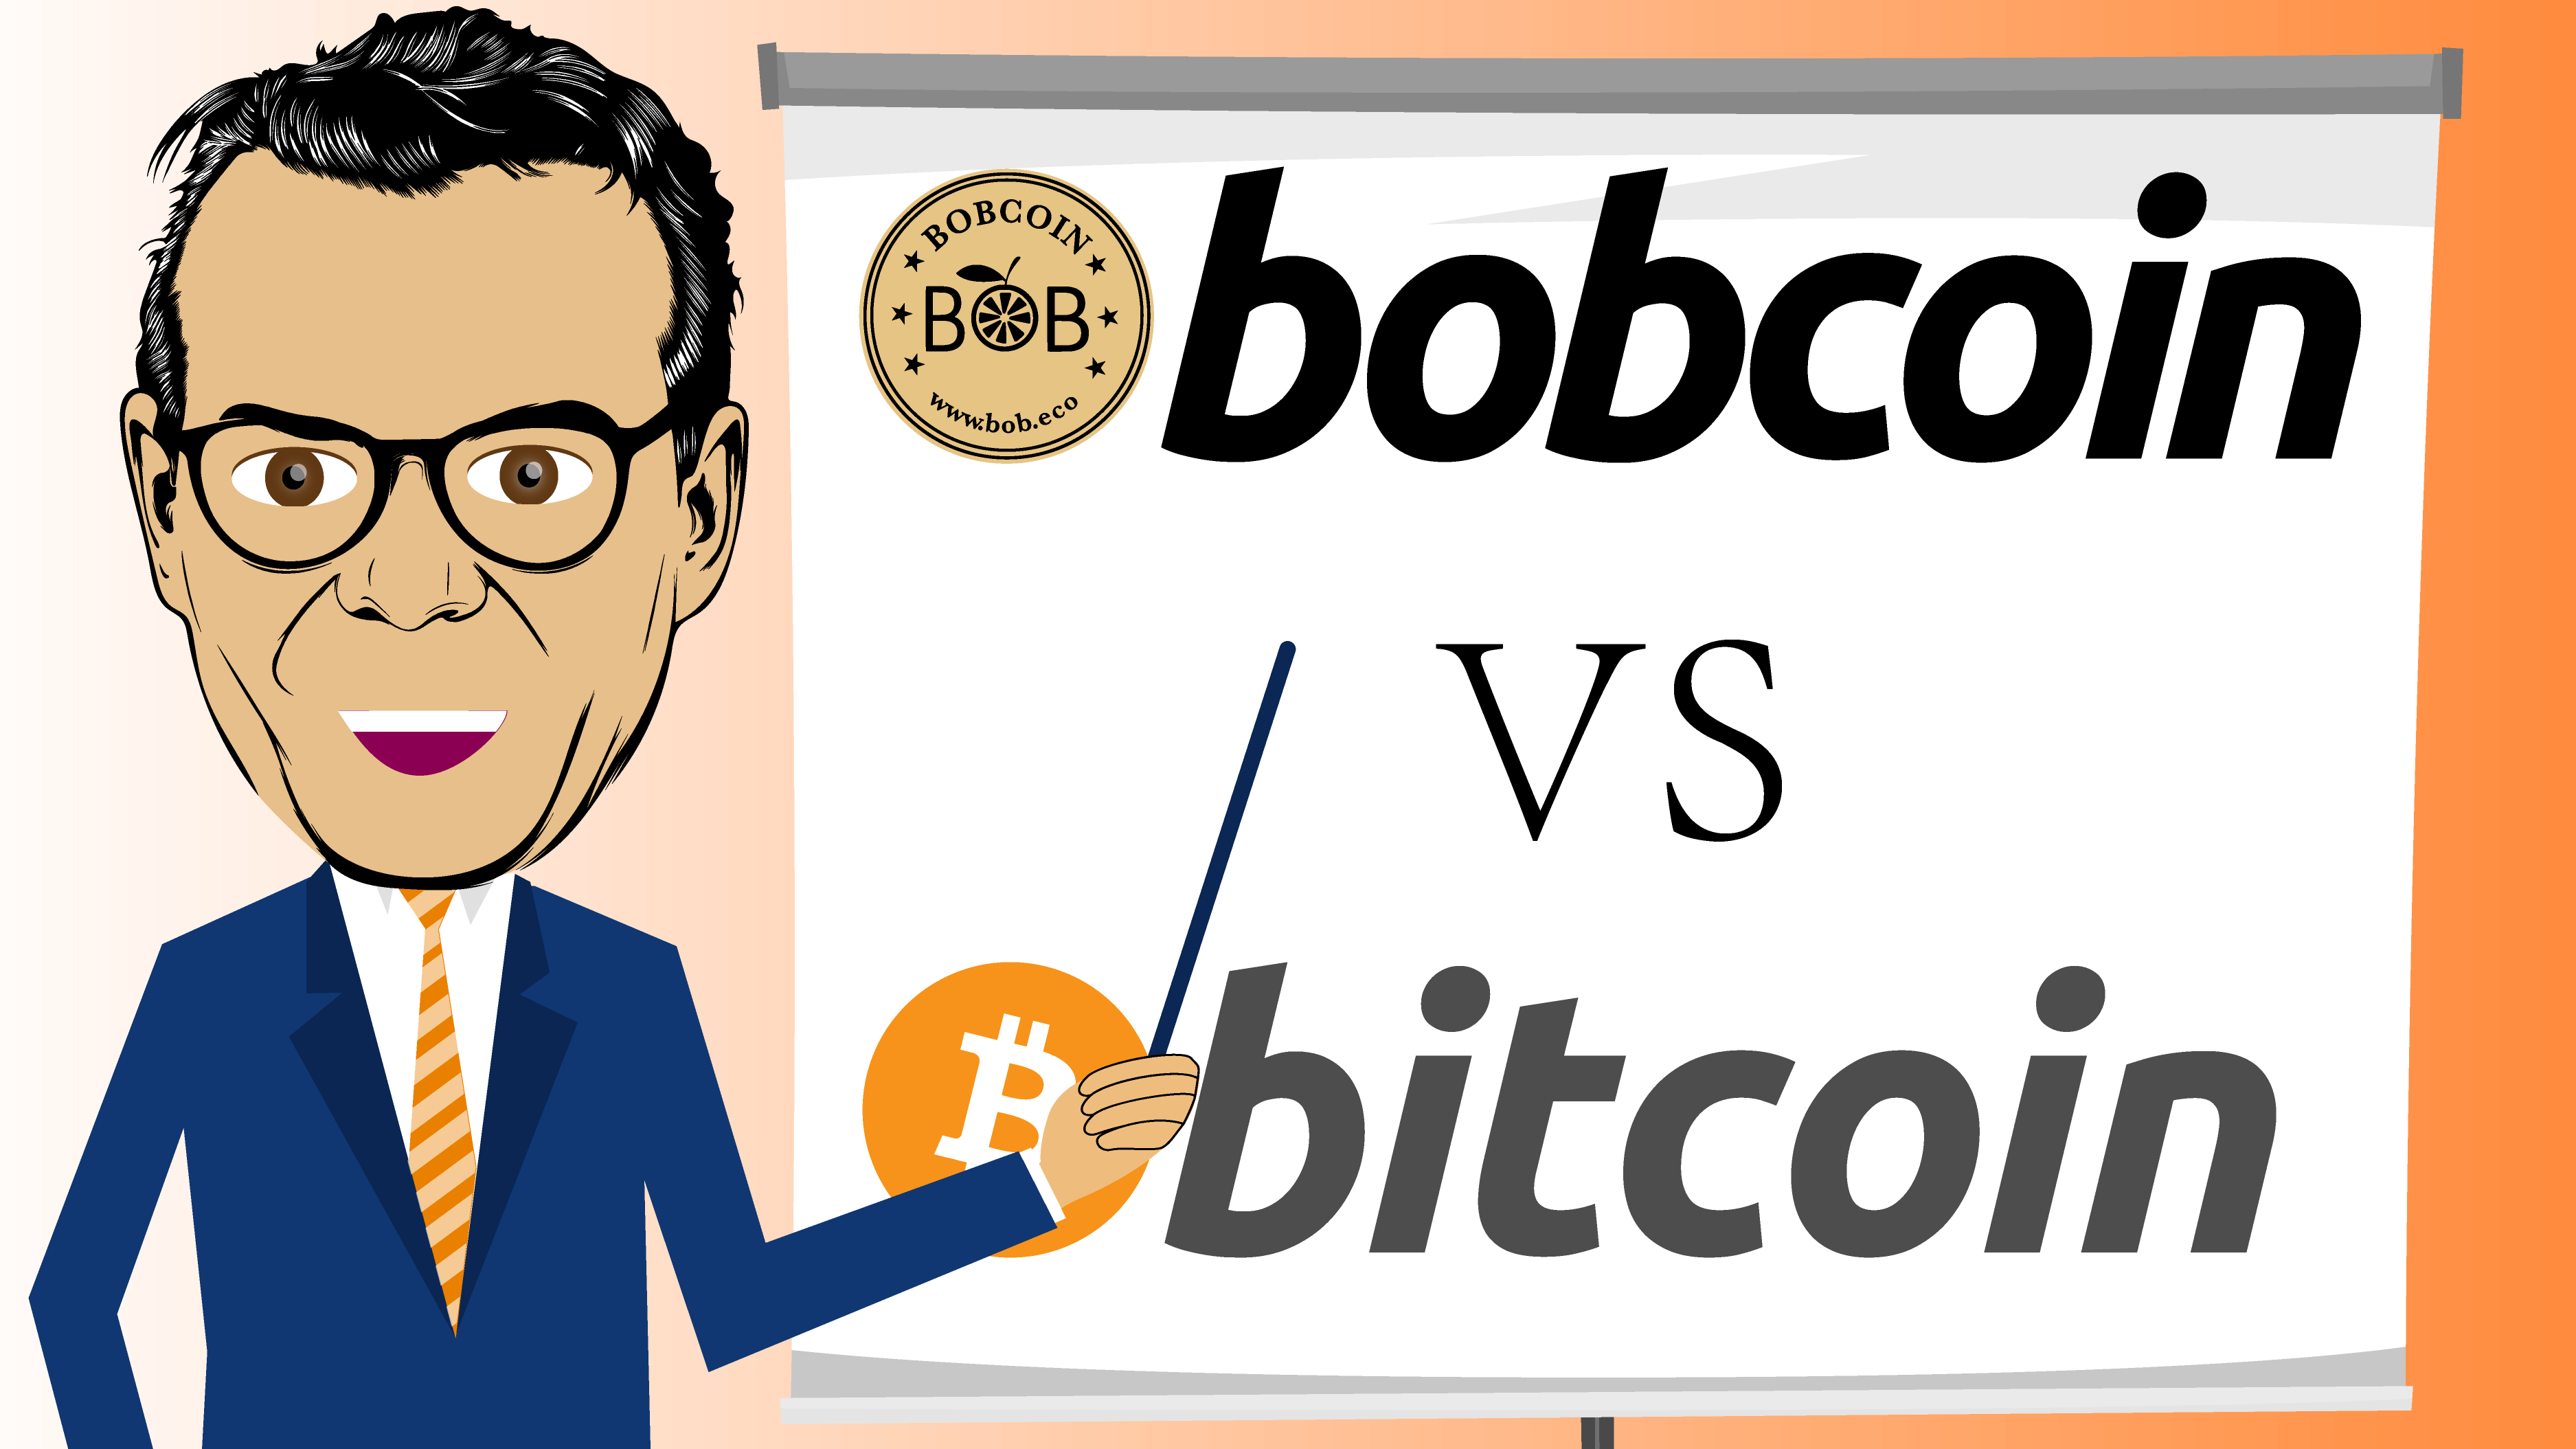 Bobcoin BOBC Icowa Bob Ultee versus Bitcoin-2